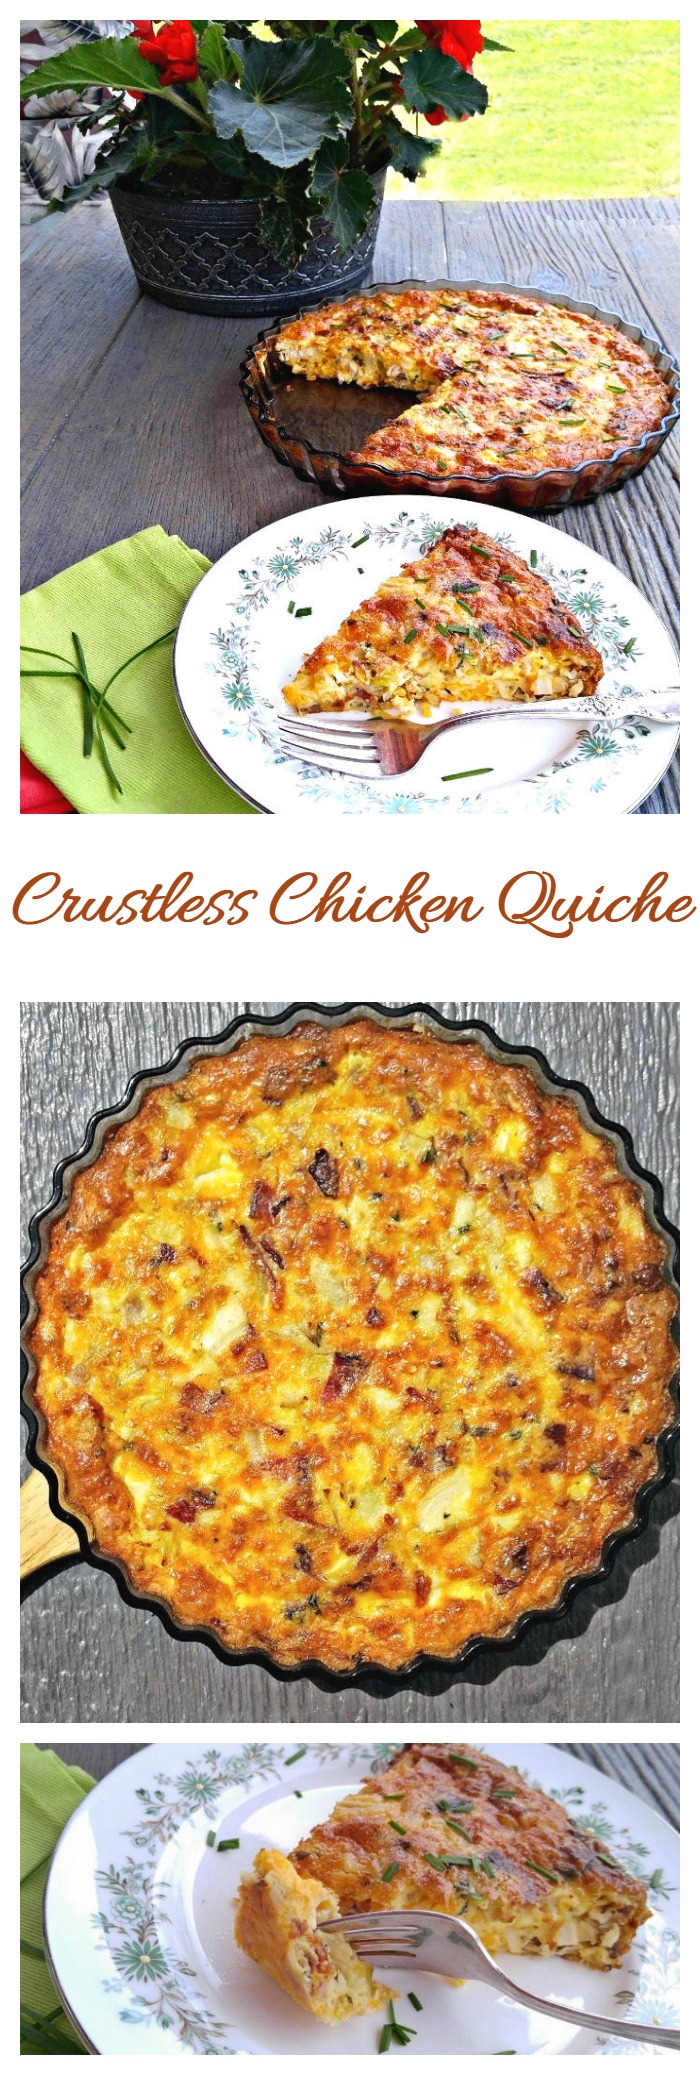 Quiche Ayam Tanpa Kulit - Resep Sarapan Sehat dan Ringan